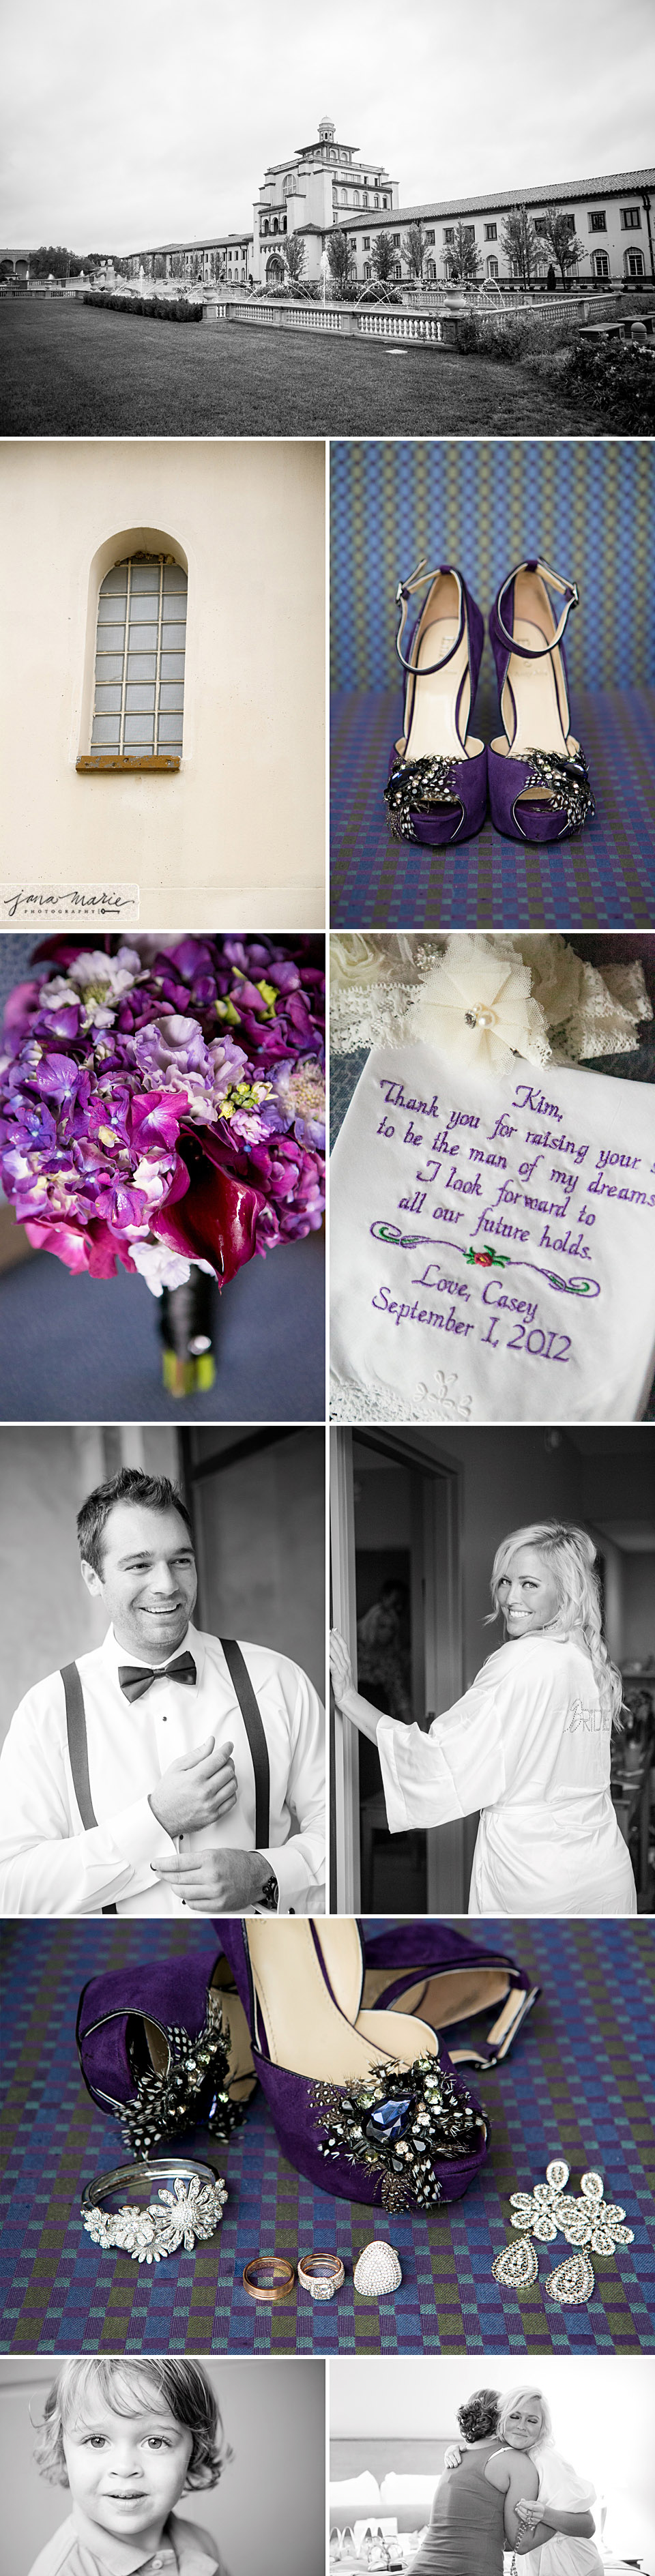 Unity Village, Jana Marie Photography, KC wedding photographer, details, bridal suite, ring shots, purple